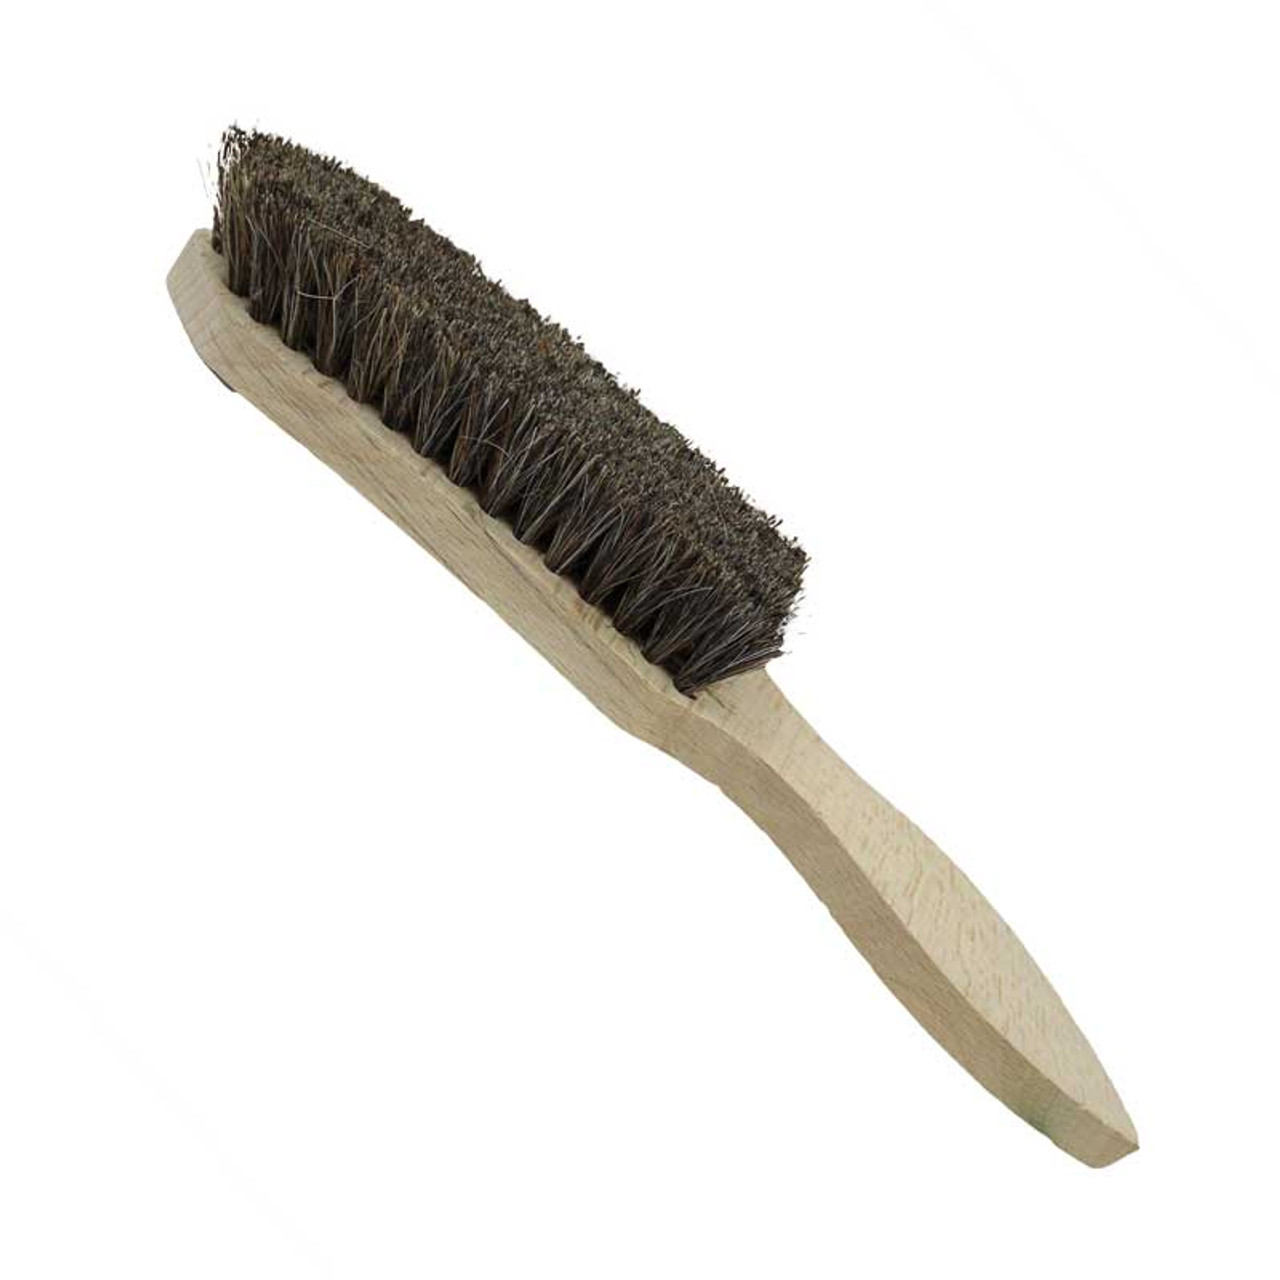 Bench/Counter Brush, 13-3/4 Long, White Bristles